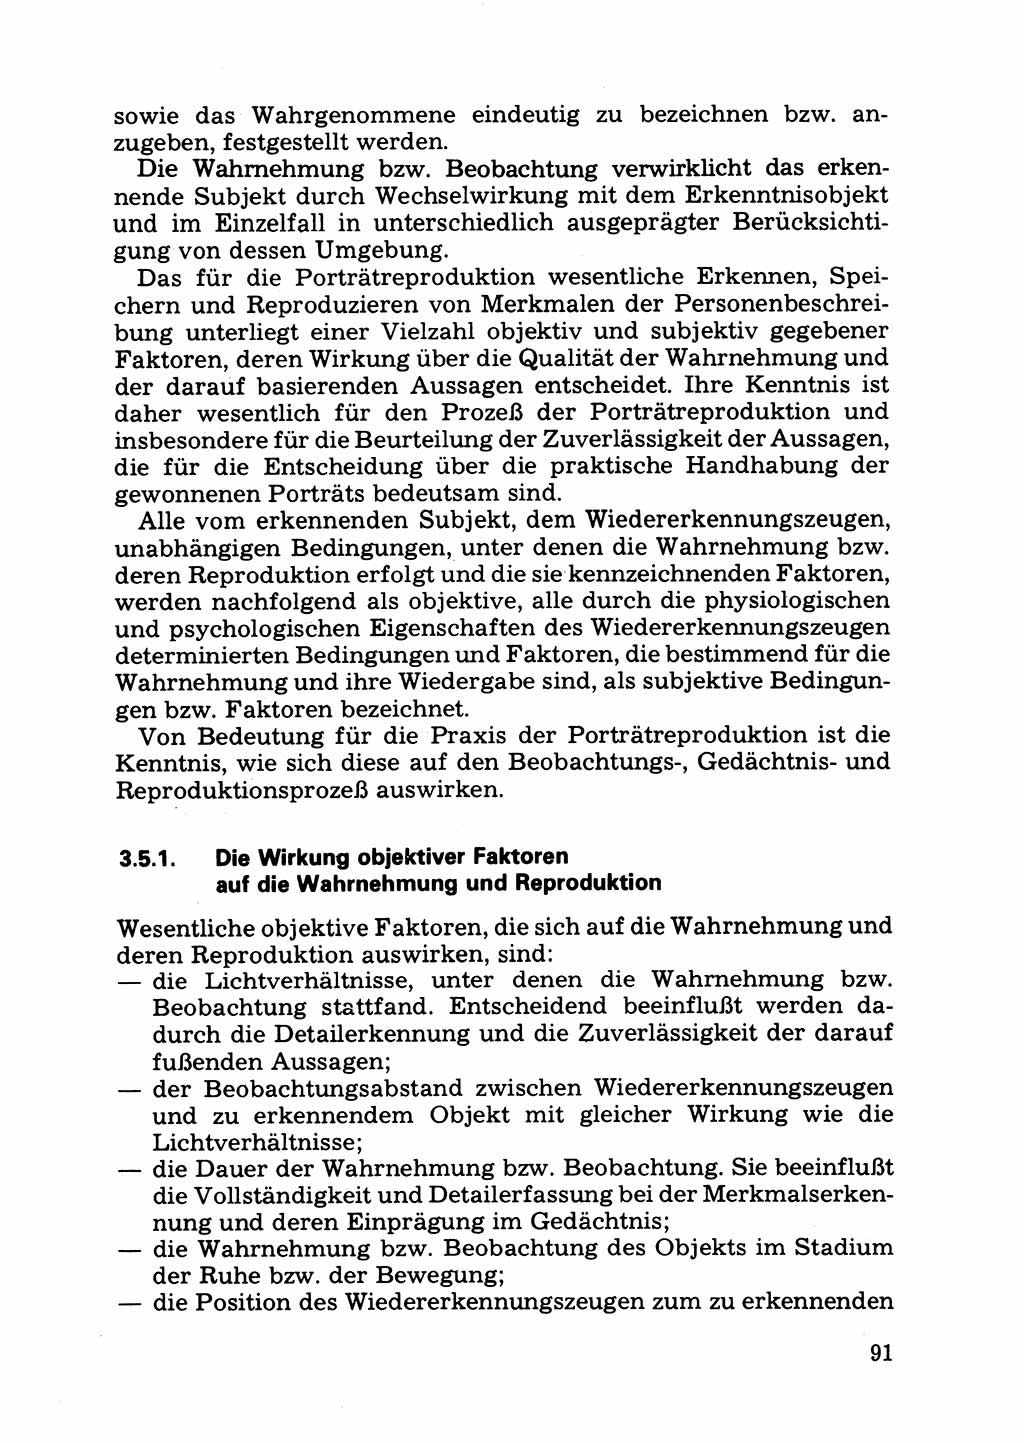 Das subjektive Porträt [Deutsche Demokratische Republik (DDR)] 1981, Seite 91 (Subj. Port. DDR 1981, S. 91)